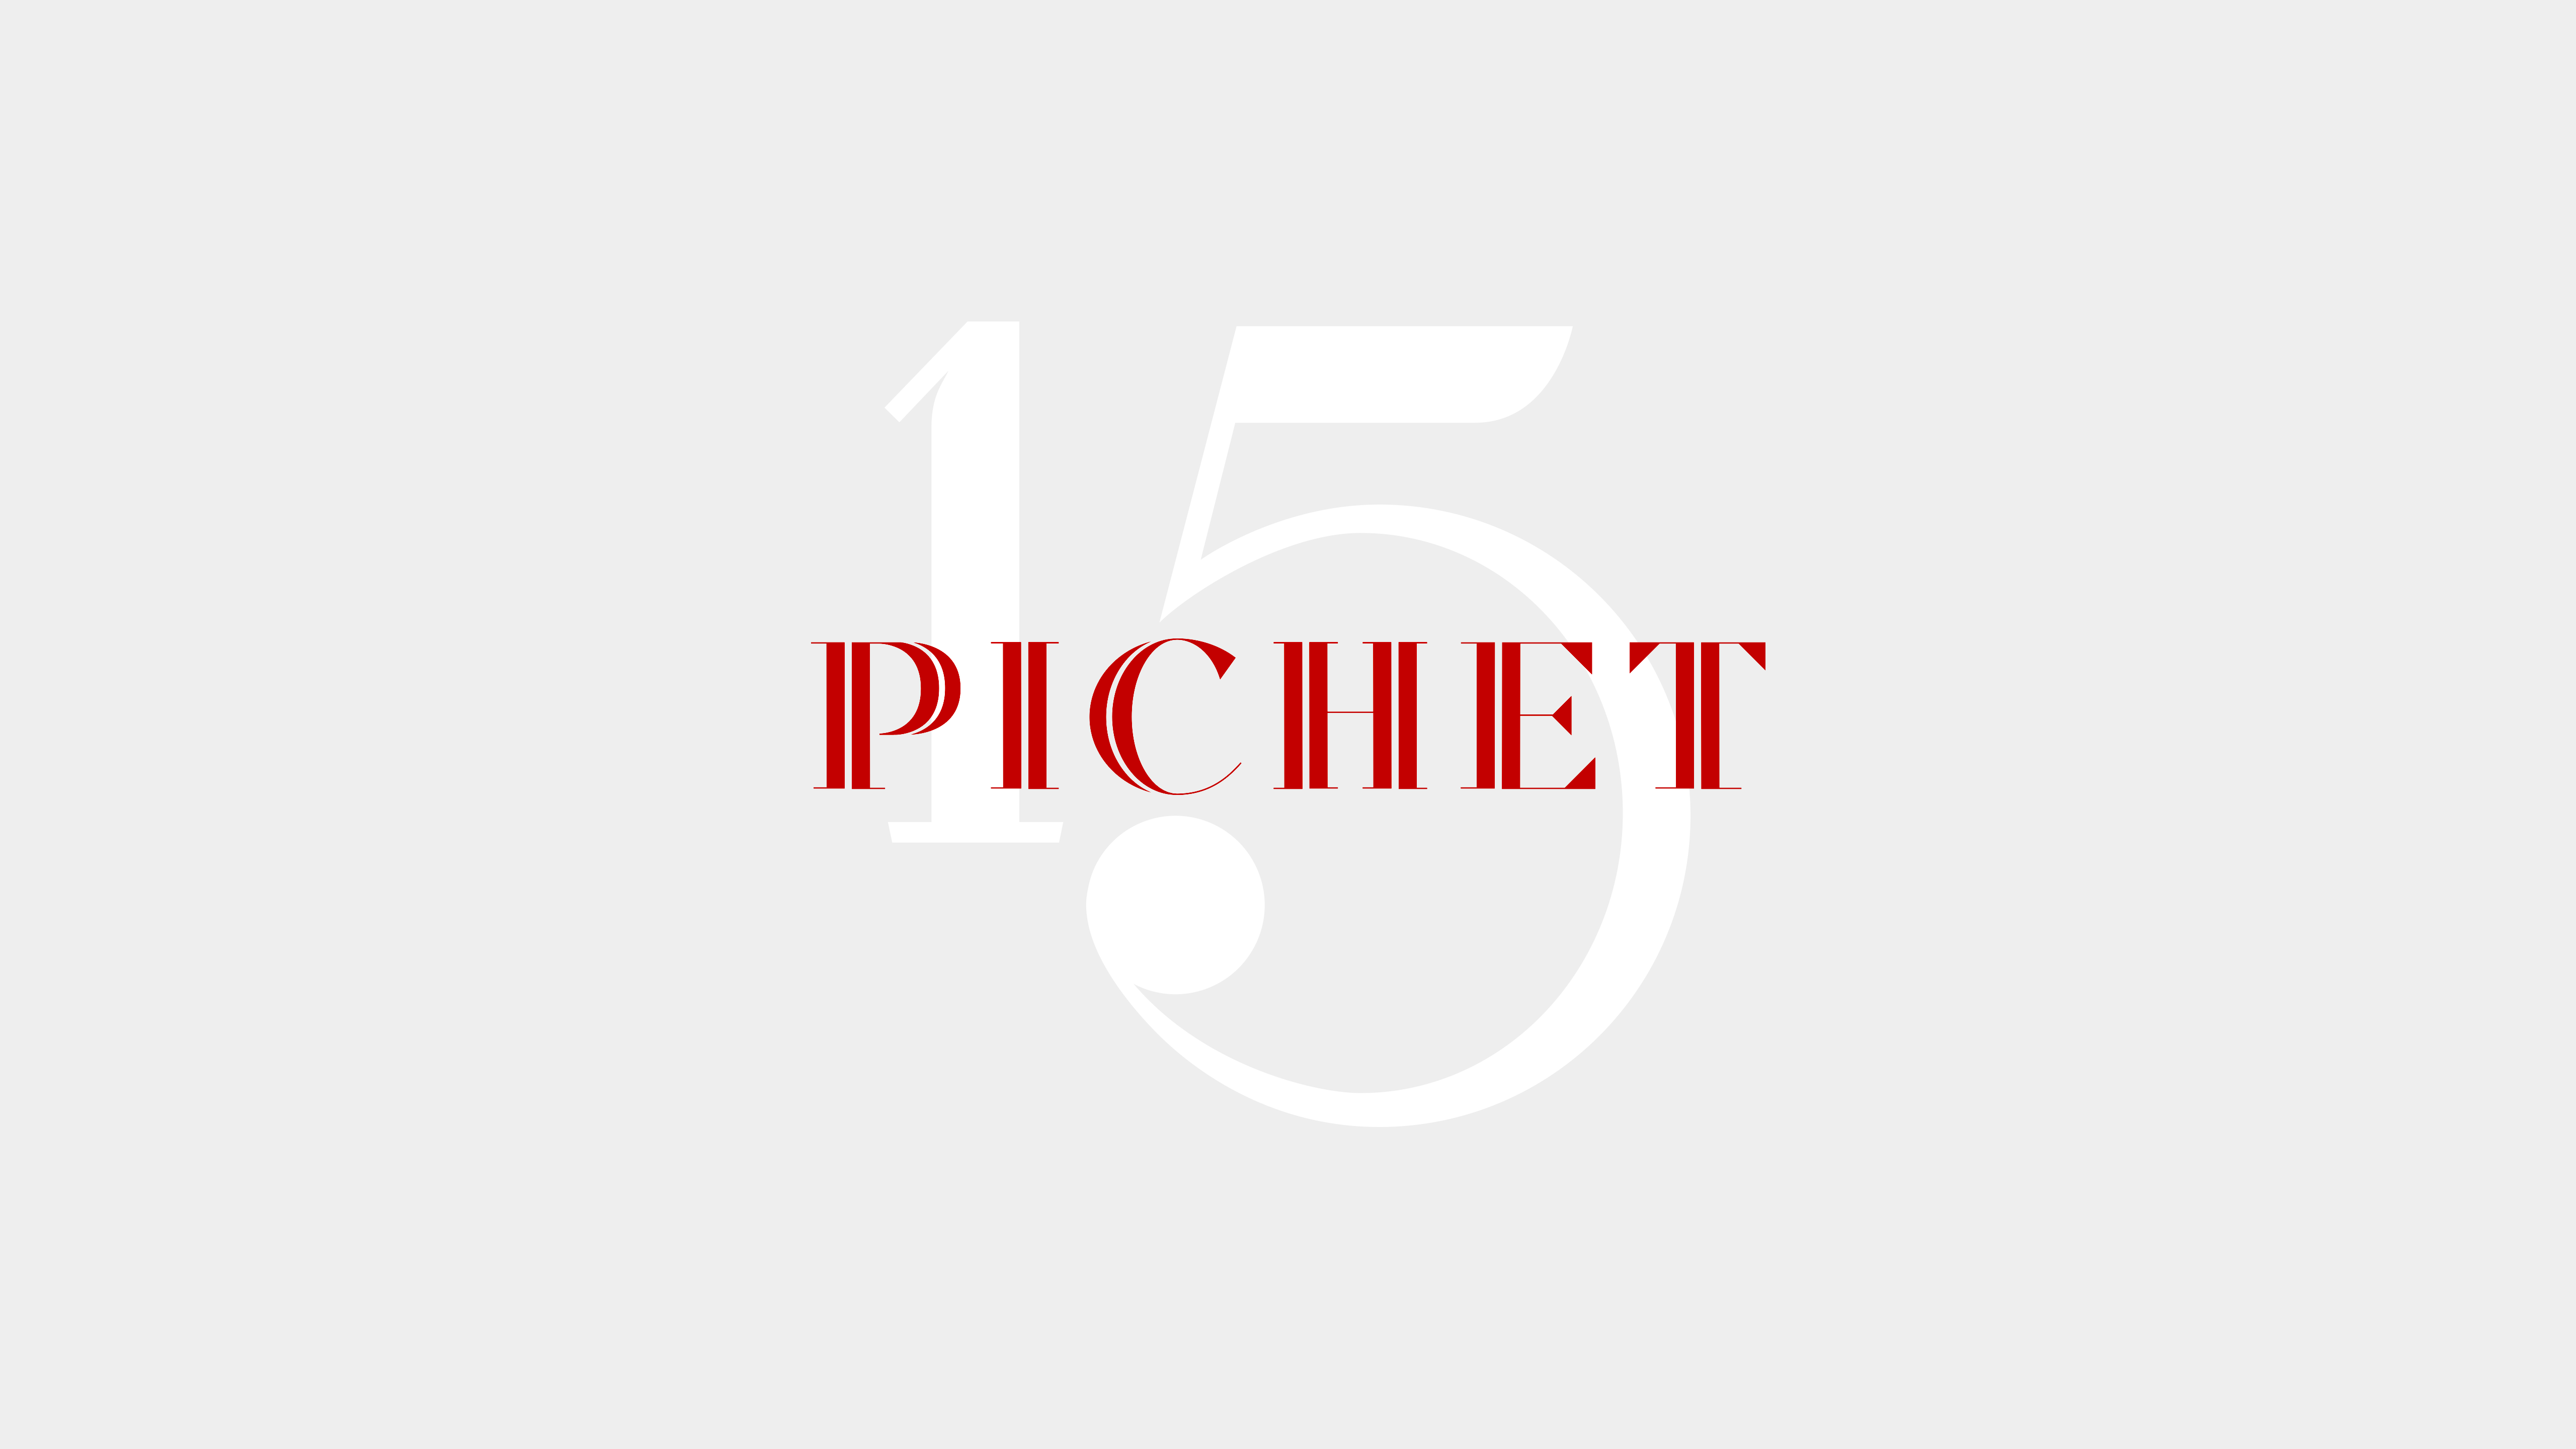 Cover image: Pichet